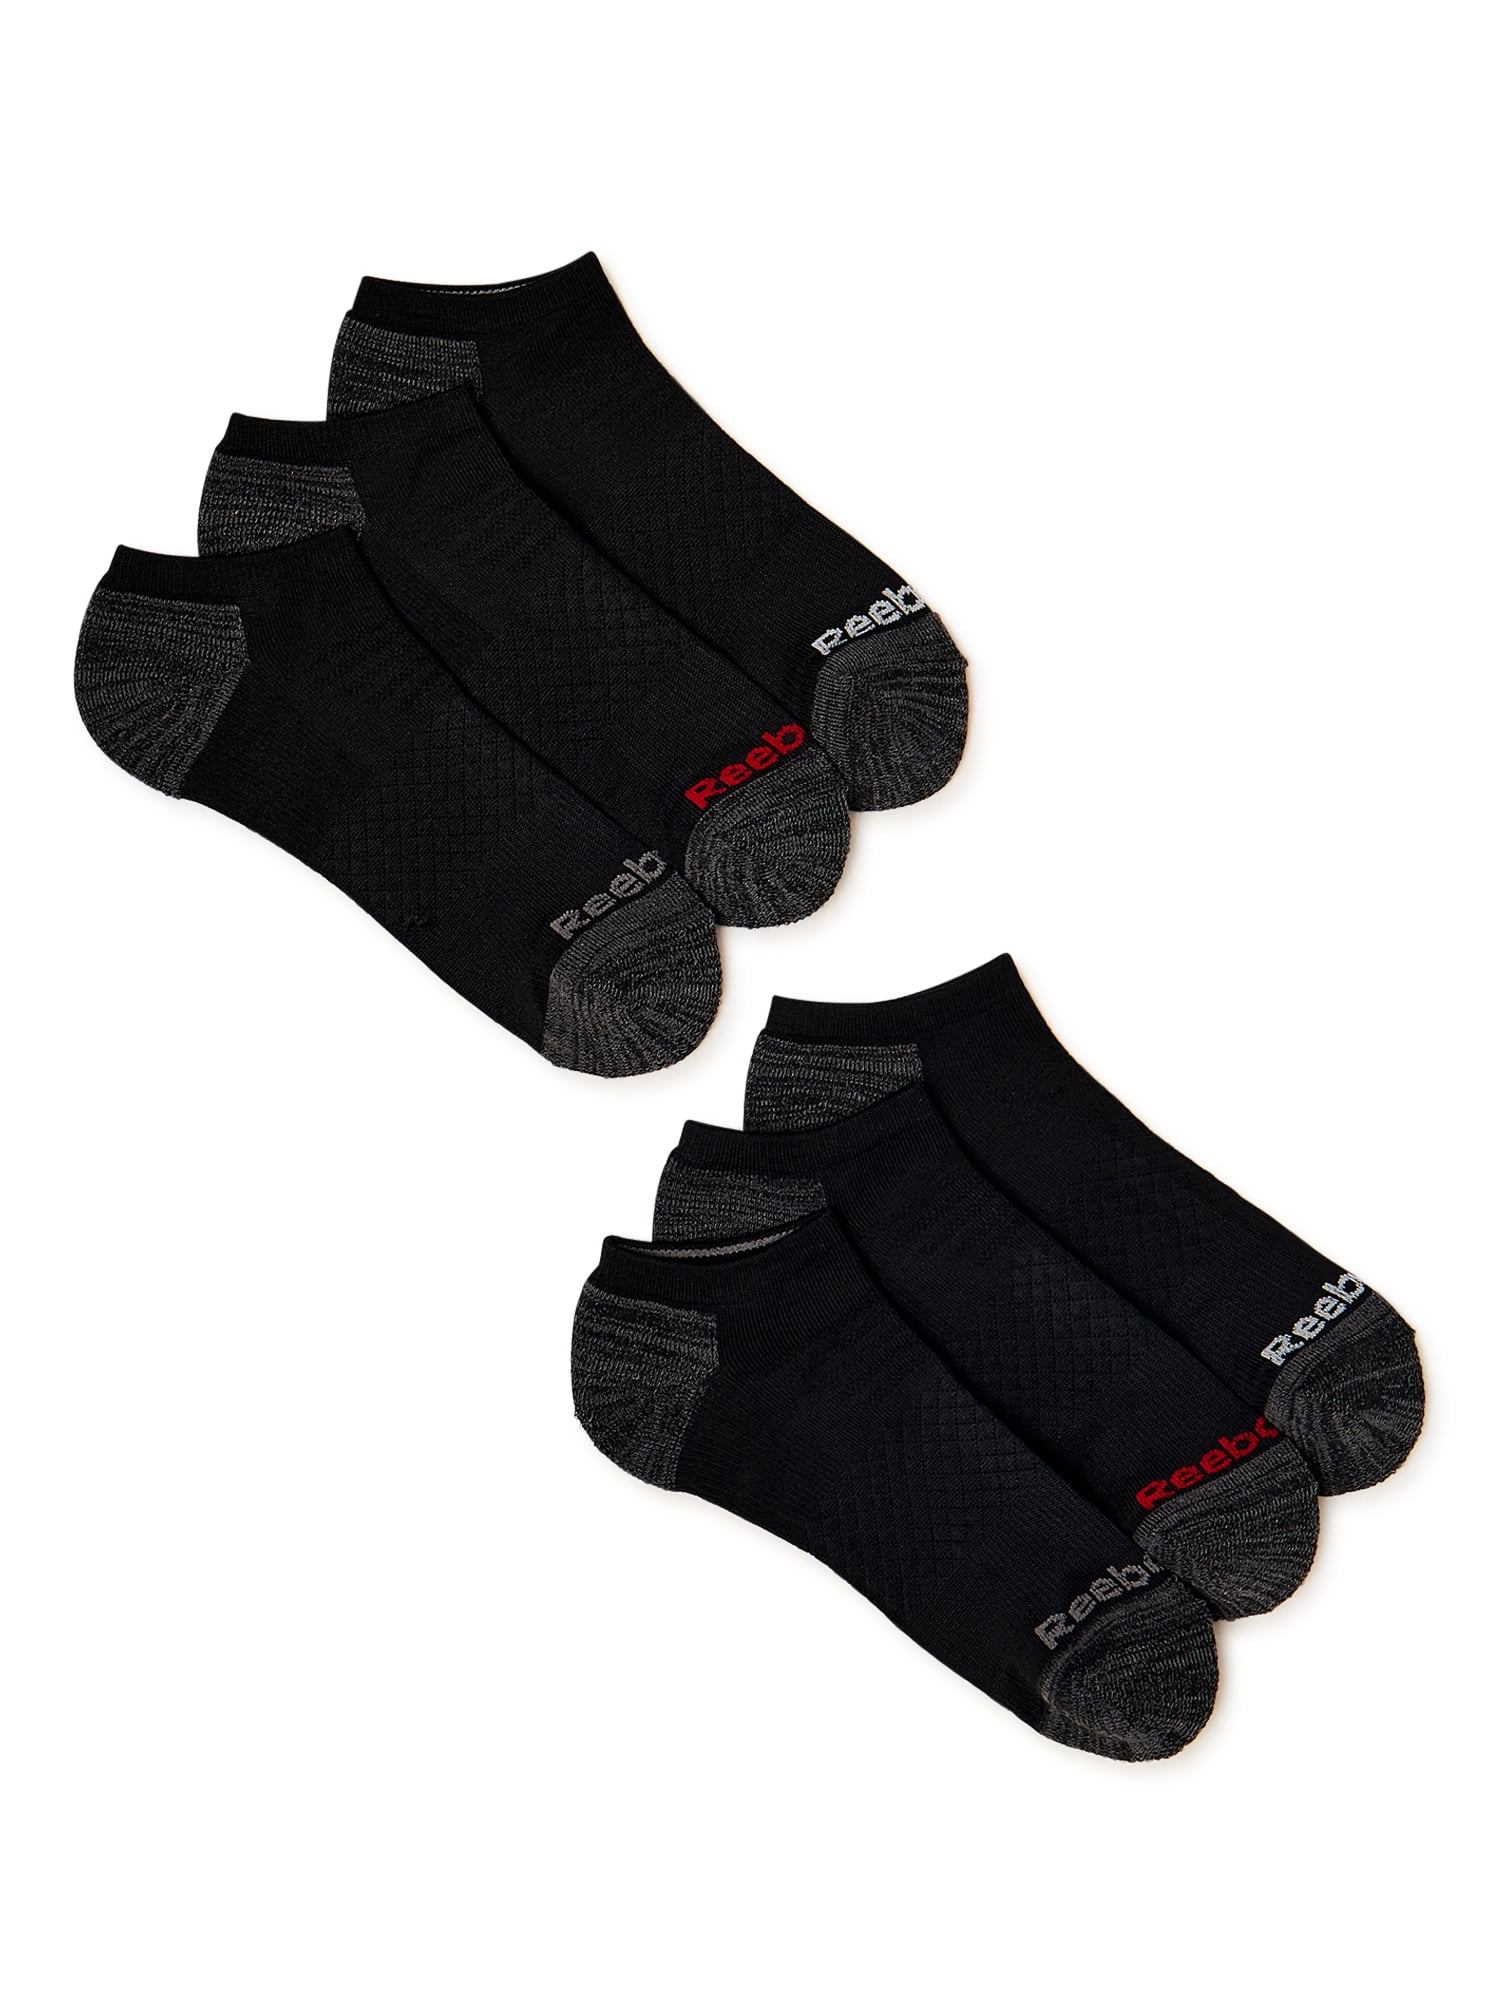 I Love Swimming Design Mens Black Socks X6VL006 